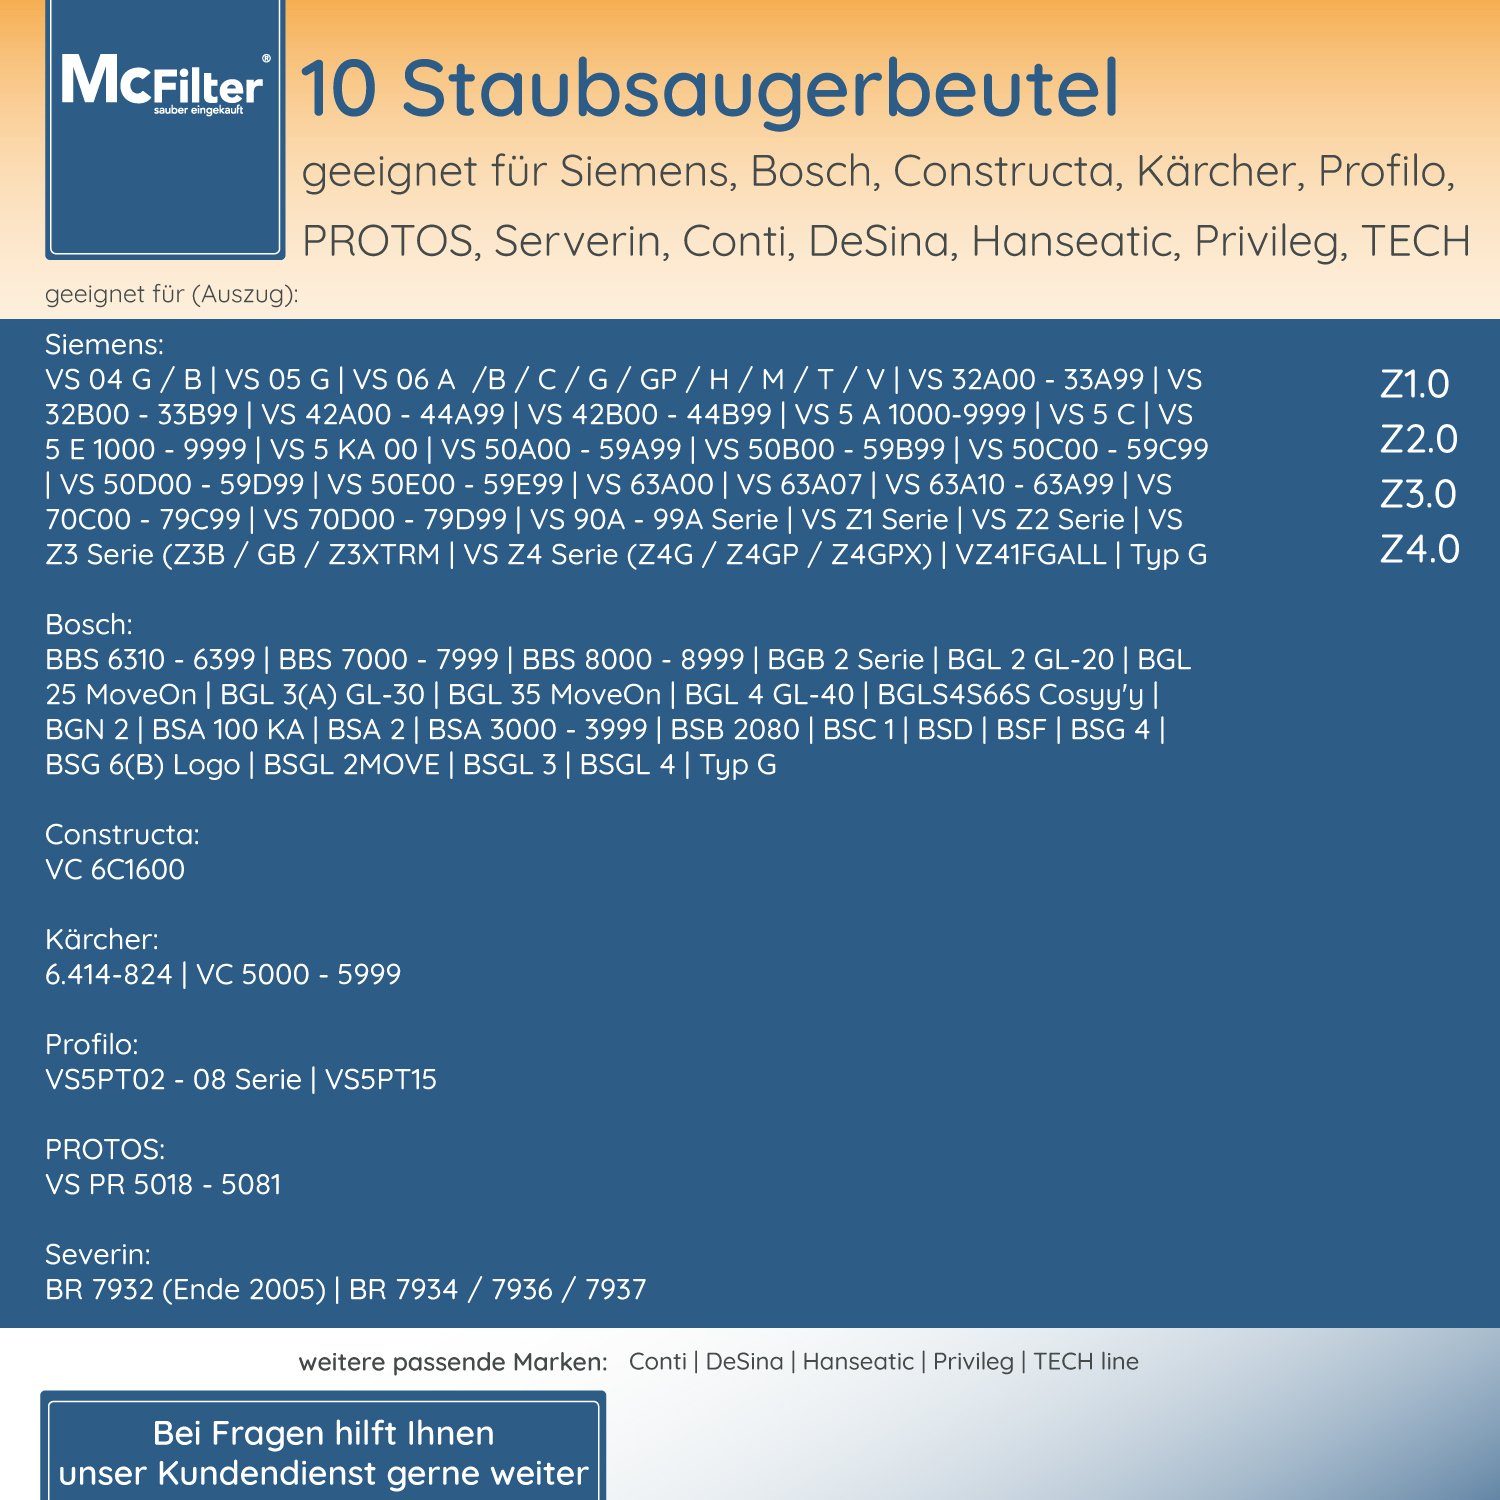 McFilter Staubsaugerbeutel geeignet für 30 mit für ProAnimal BBZ41FGALL, Filter 5-lagiger passend Hygieneverschluss, Bosch, wie 6, inkl. Serie BGL6TPET Staubbeutel St., Staubsauger